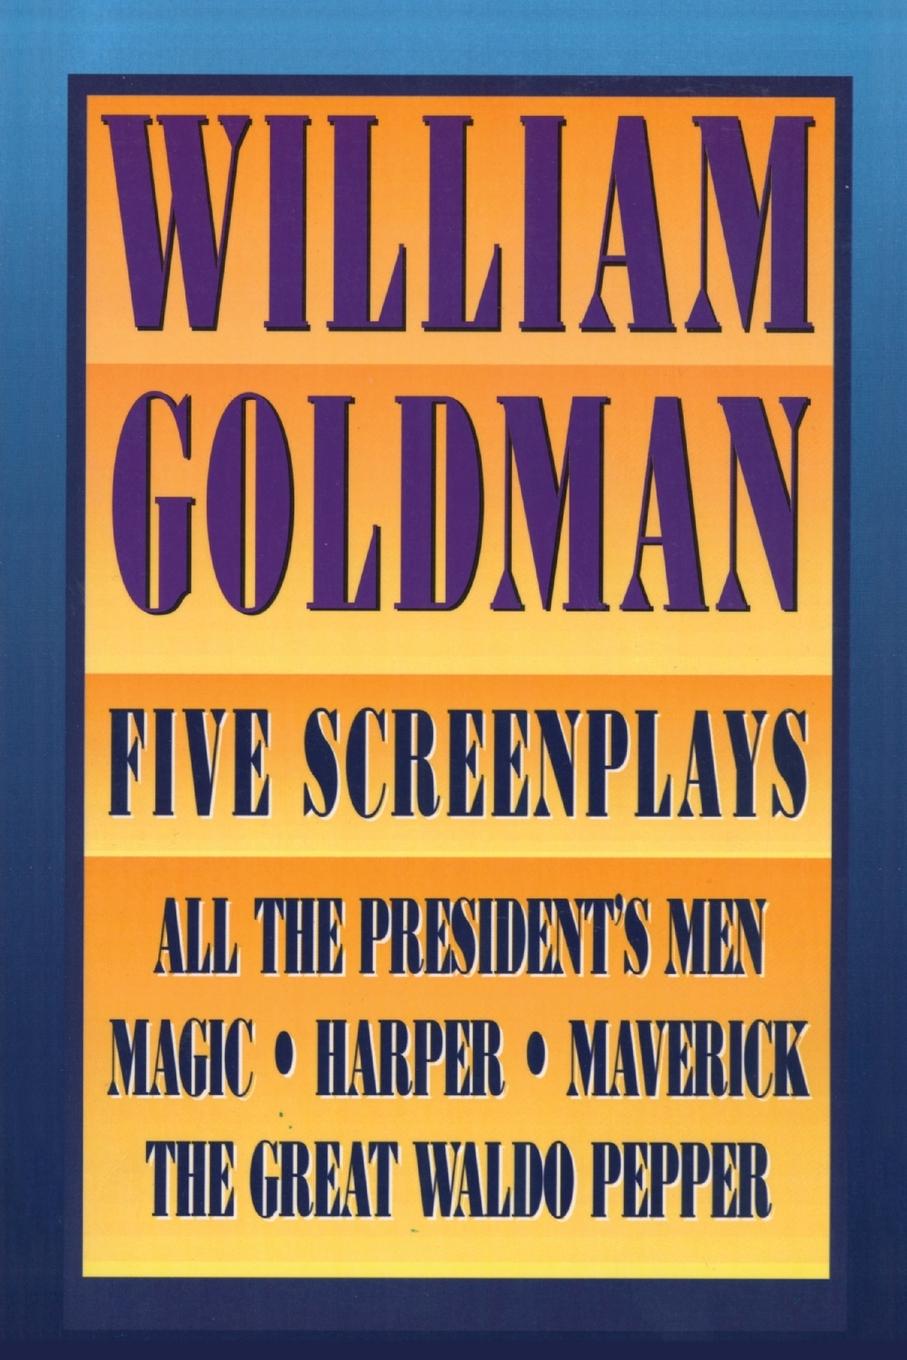 William Goldman - Goldman, William